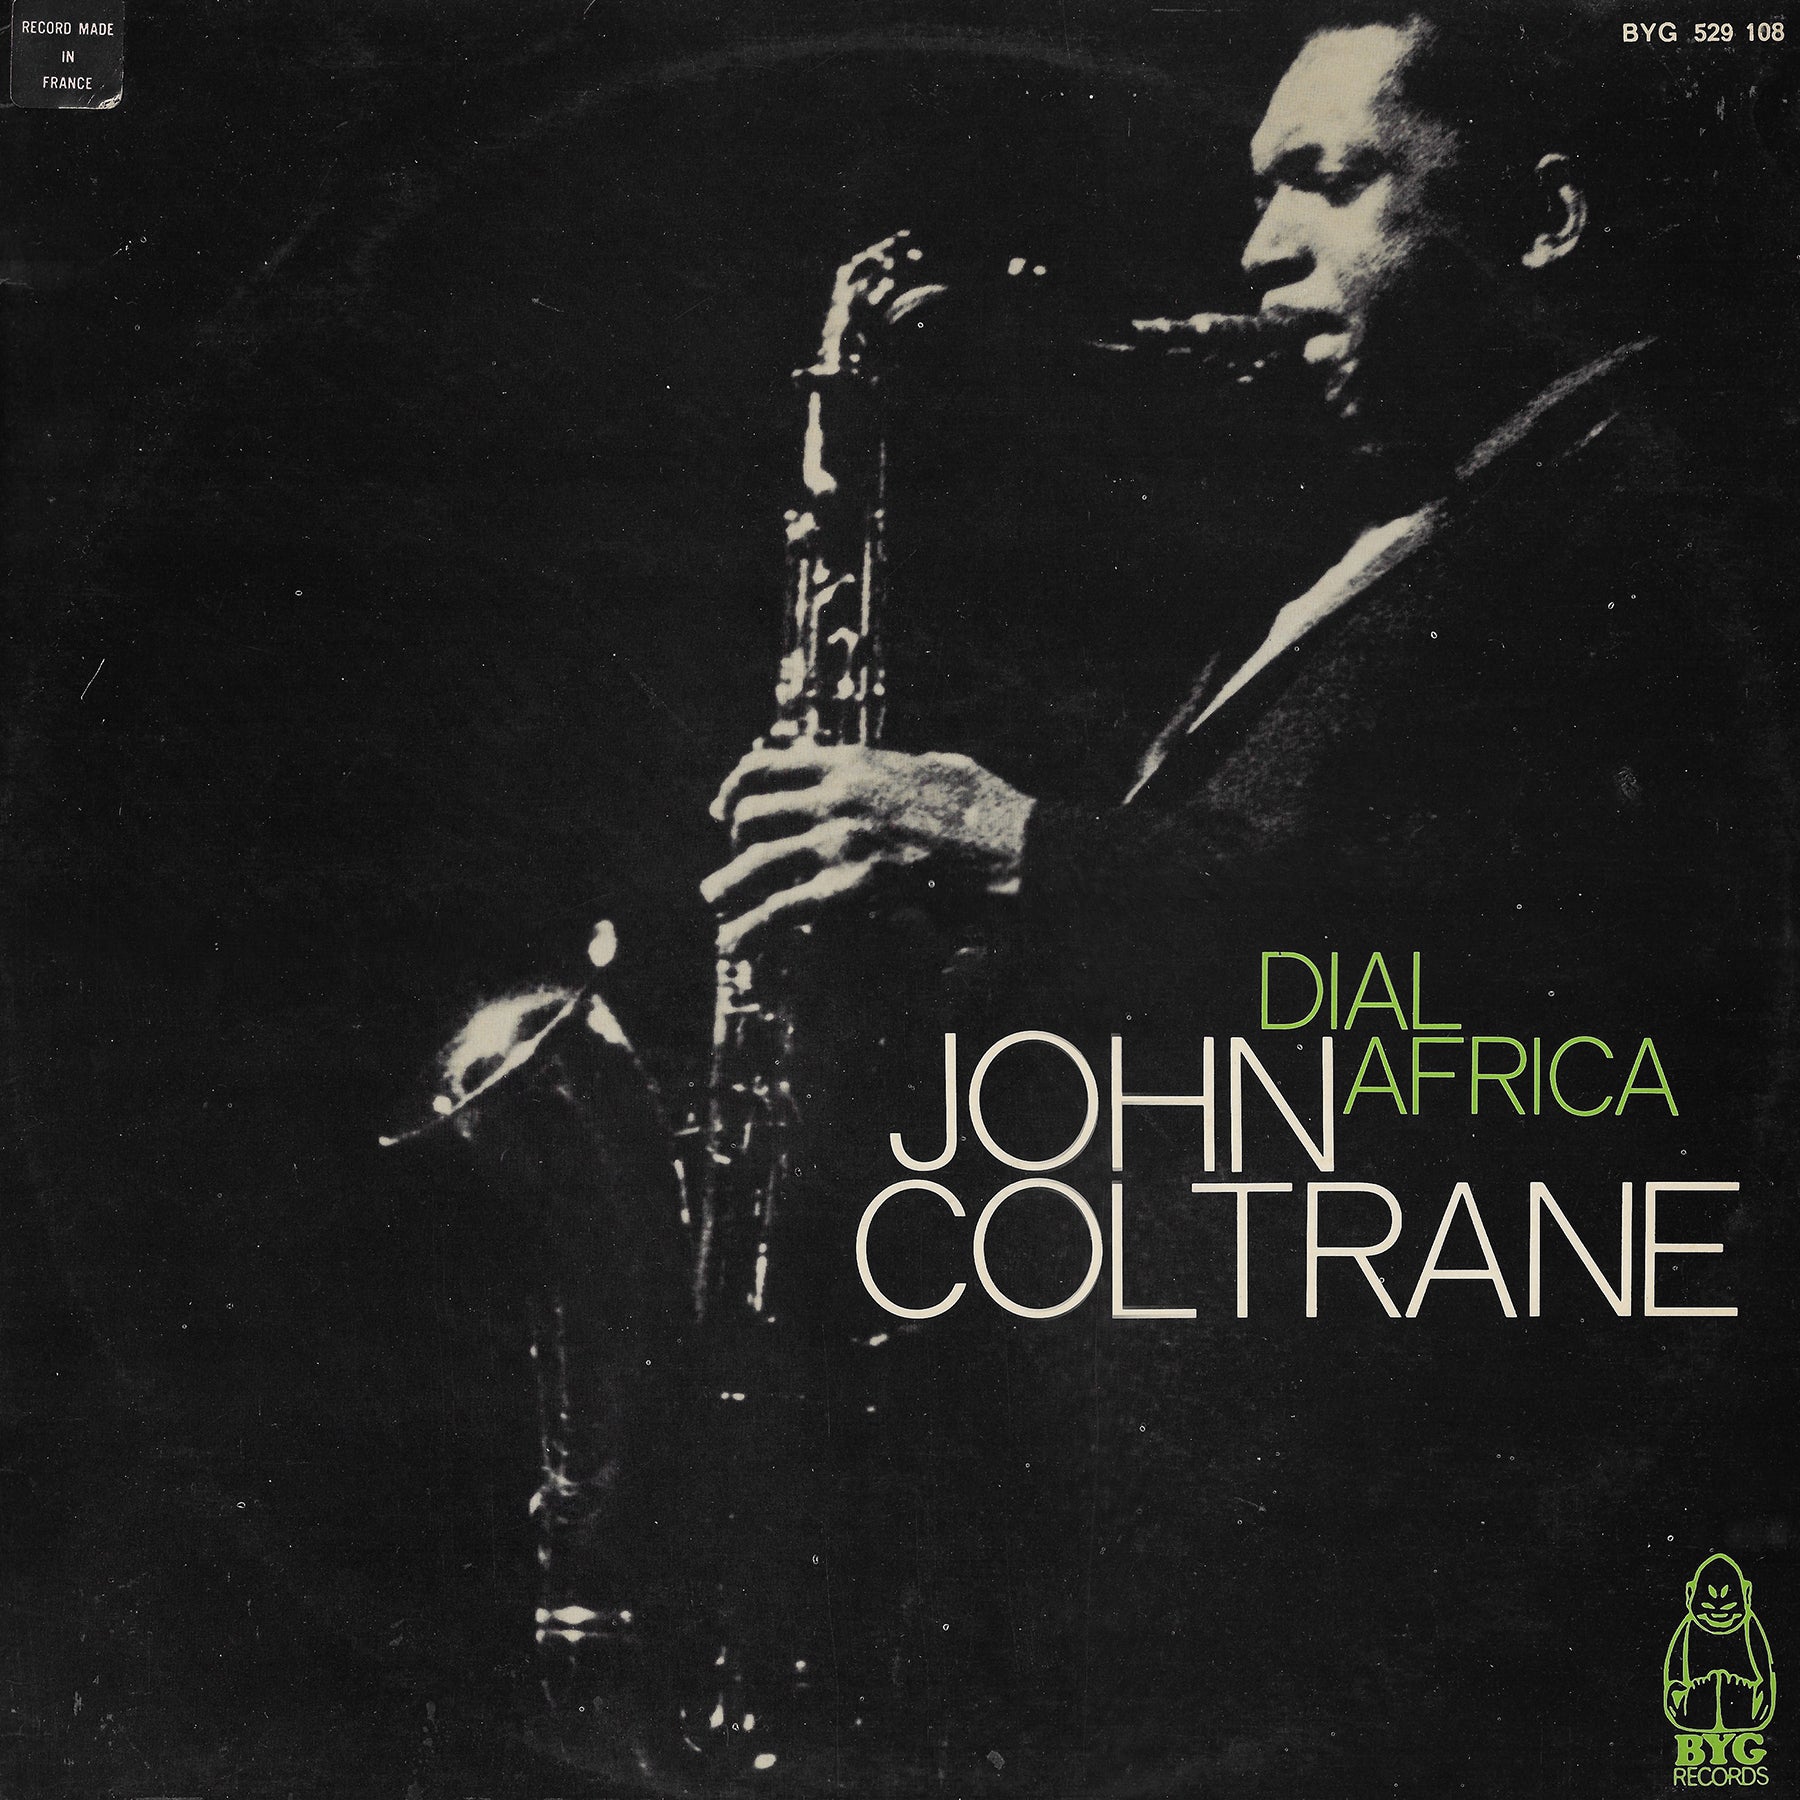 John Coltrane - Dial Africa